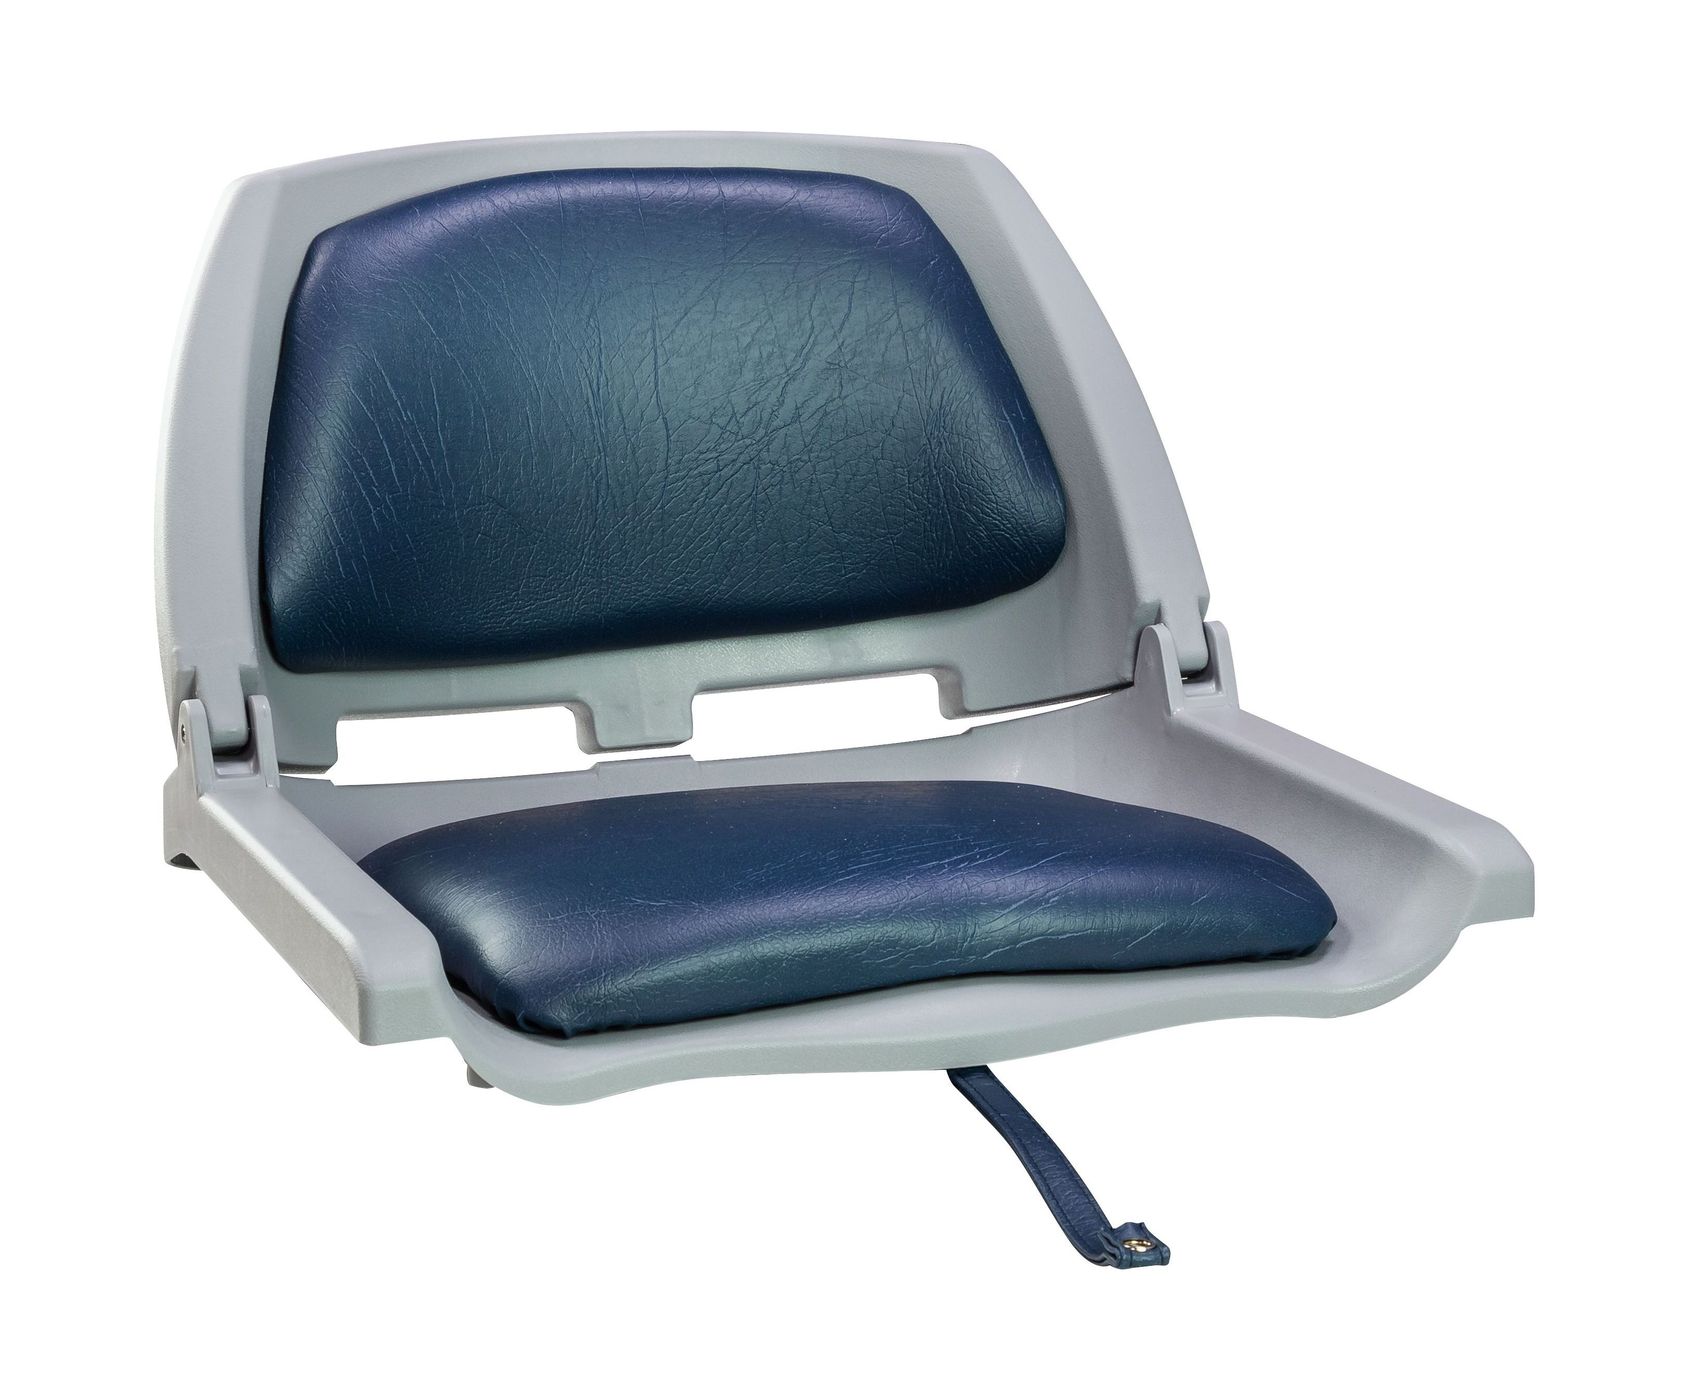 Кресло складное мягкое TRAVELER, цвет серый/синий 1061112C кресло мягкое складное classic обивка винил серый синий marine rocket 75153bg mr